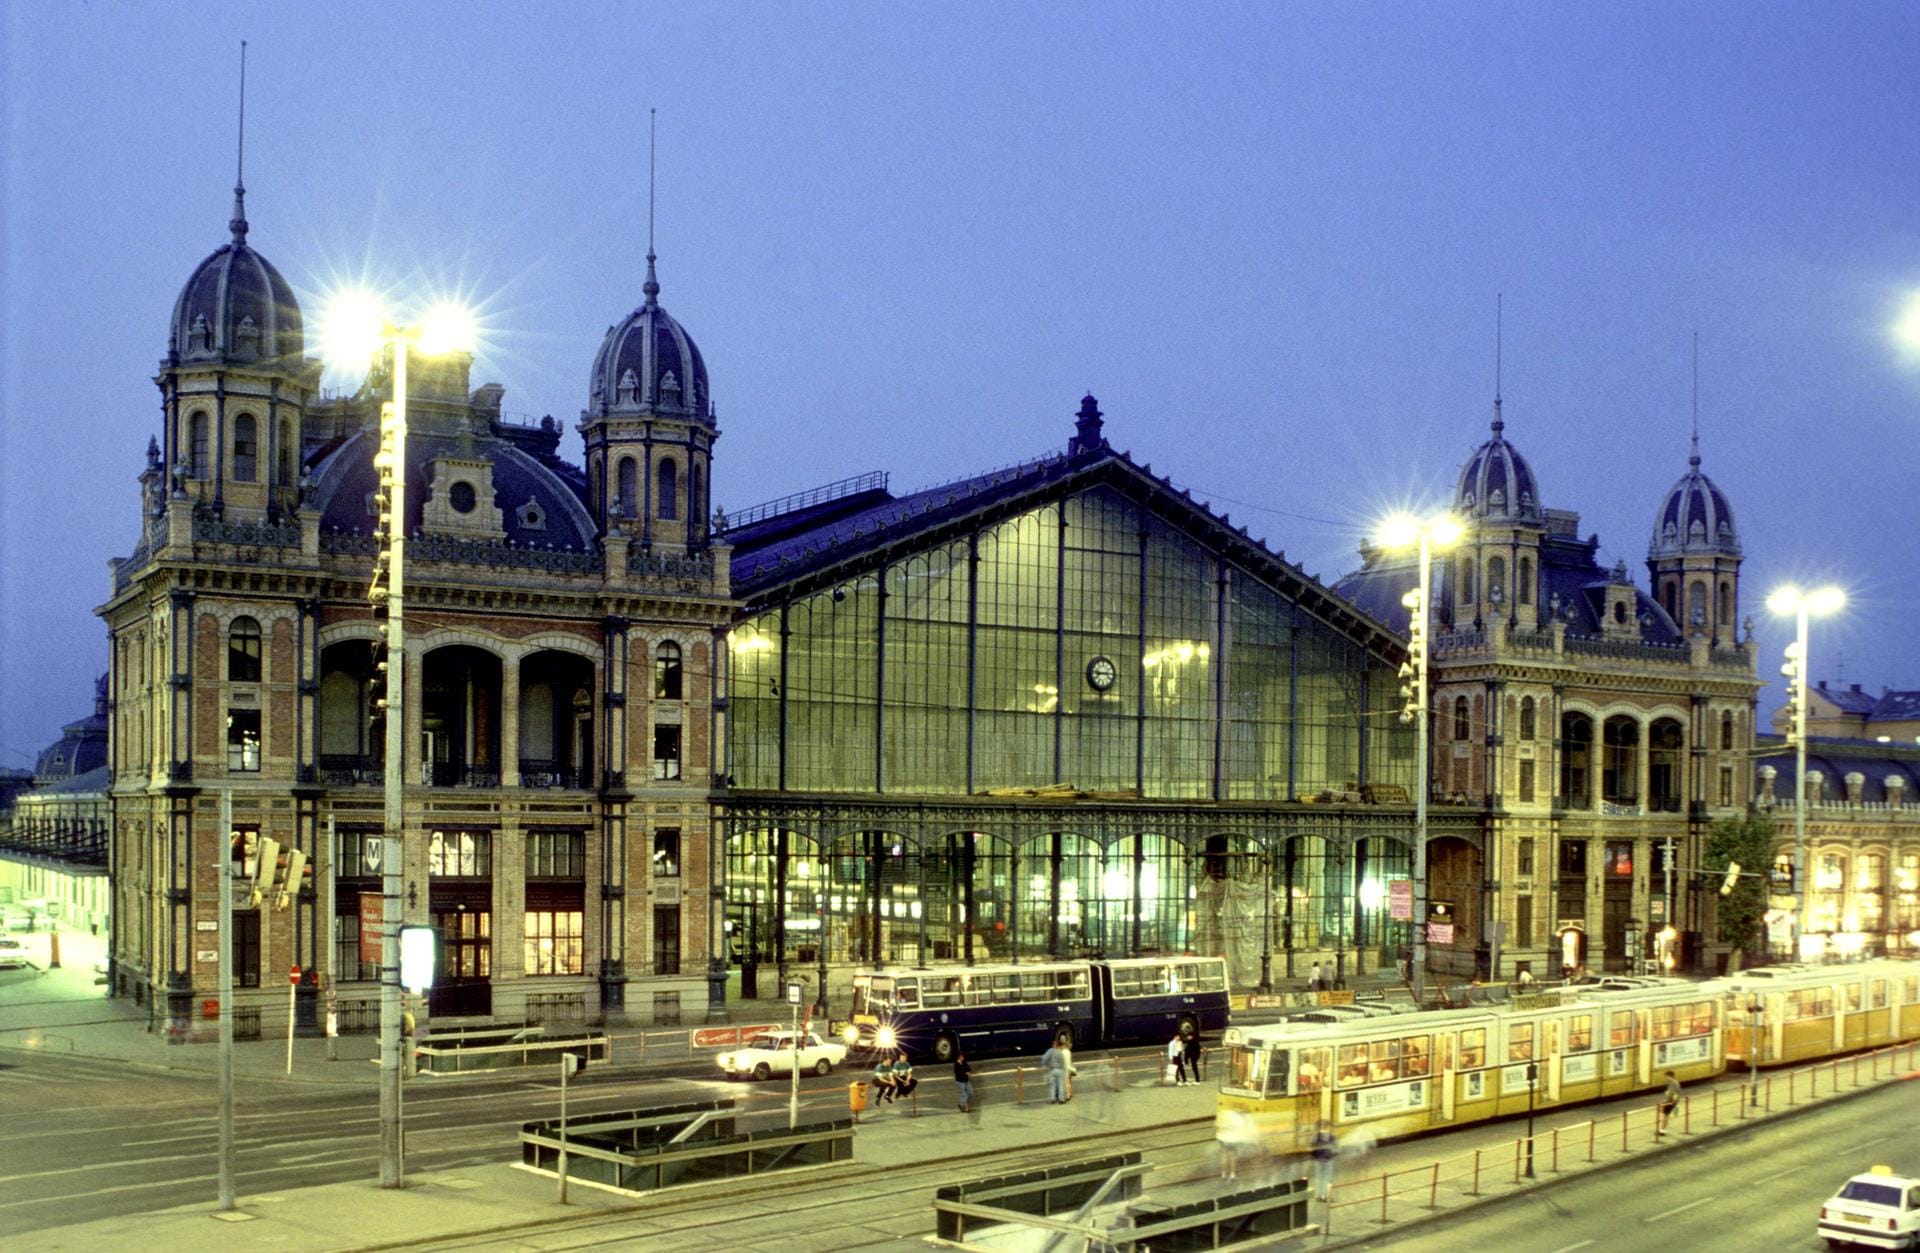 Besonders auffällig ist die große Glasfassade mit den drei weit ausladenden Eingangstüren des Budapester Westbahnhofs.